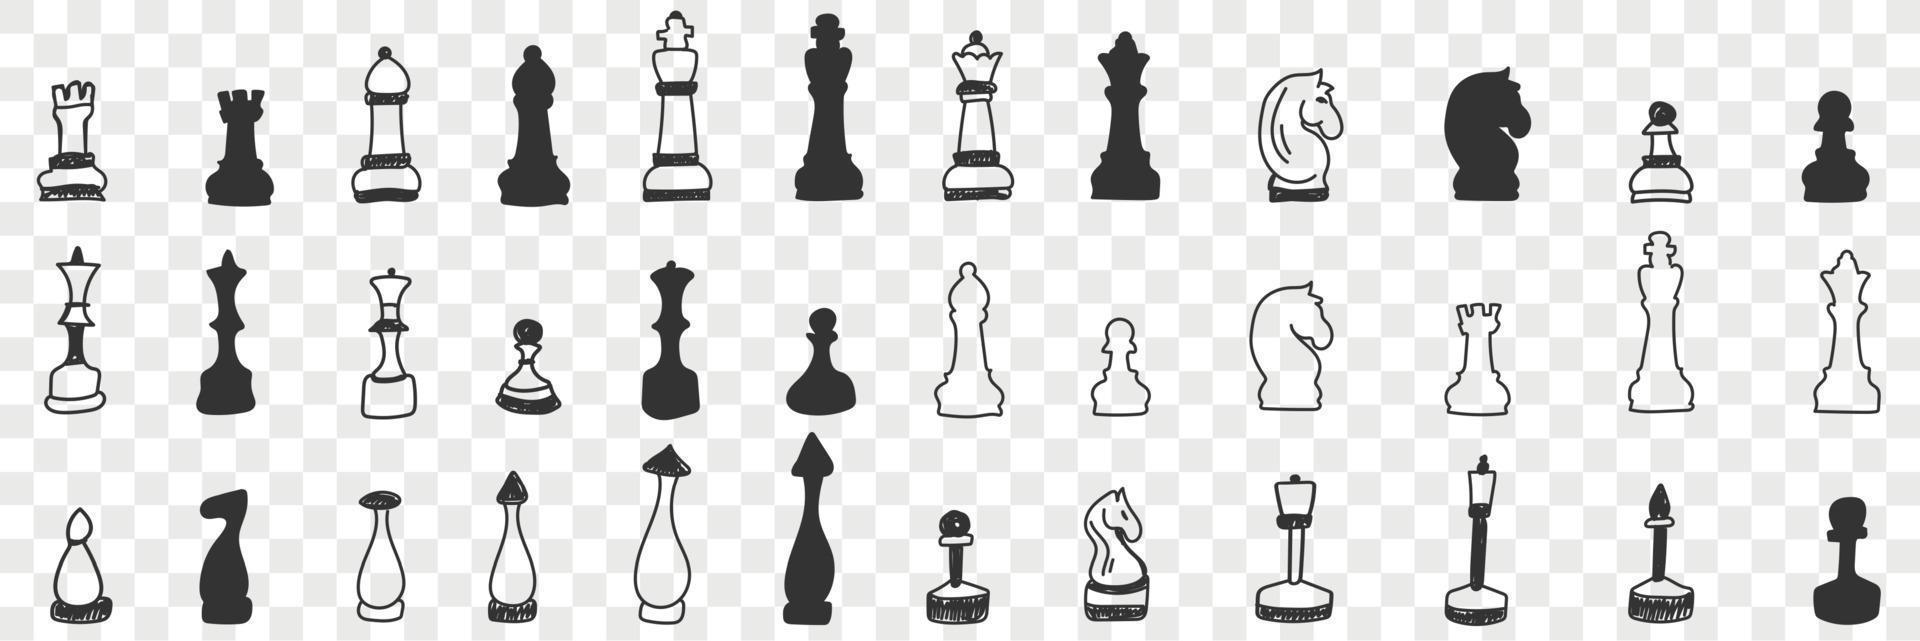 chessmen på styrelse klotter uppsättning. samling av hand dragen olika chessmen för spelar spel vit och svart på styrelse för schack isolerat på transparent bakgrund vektor